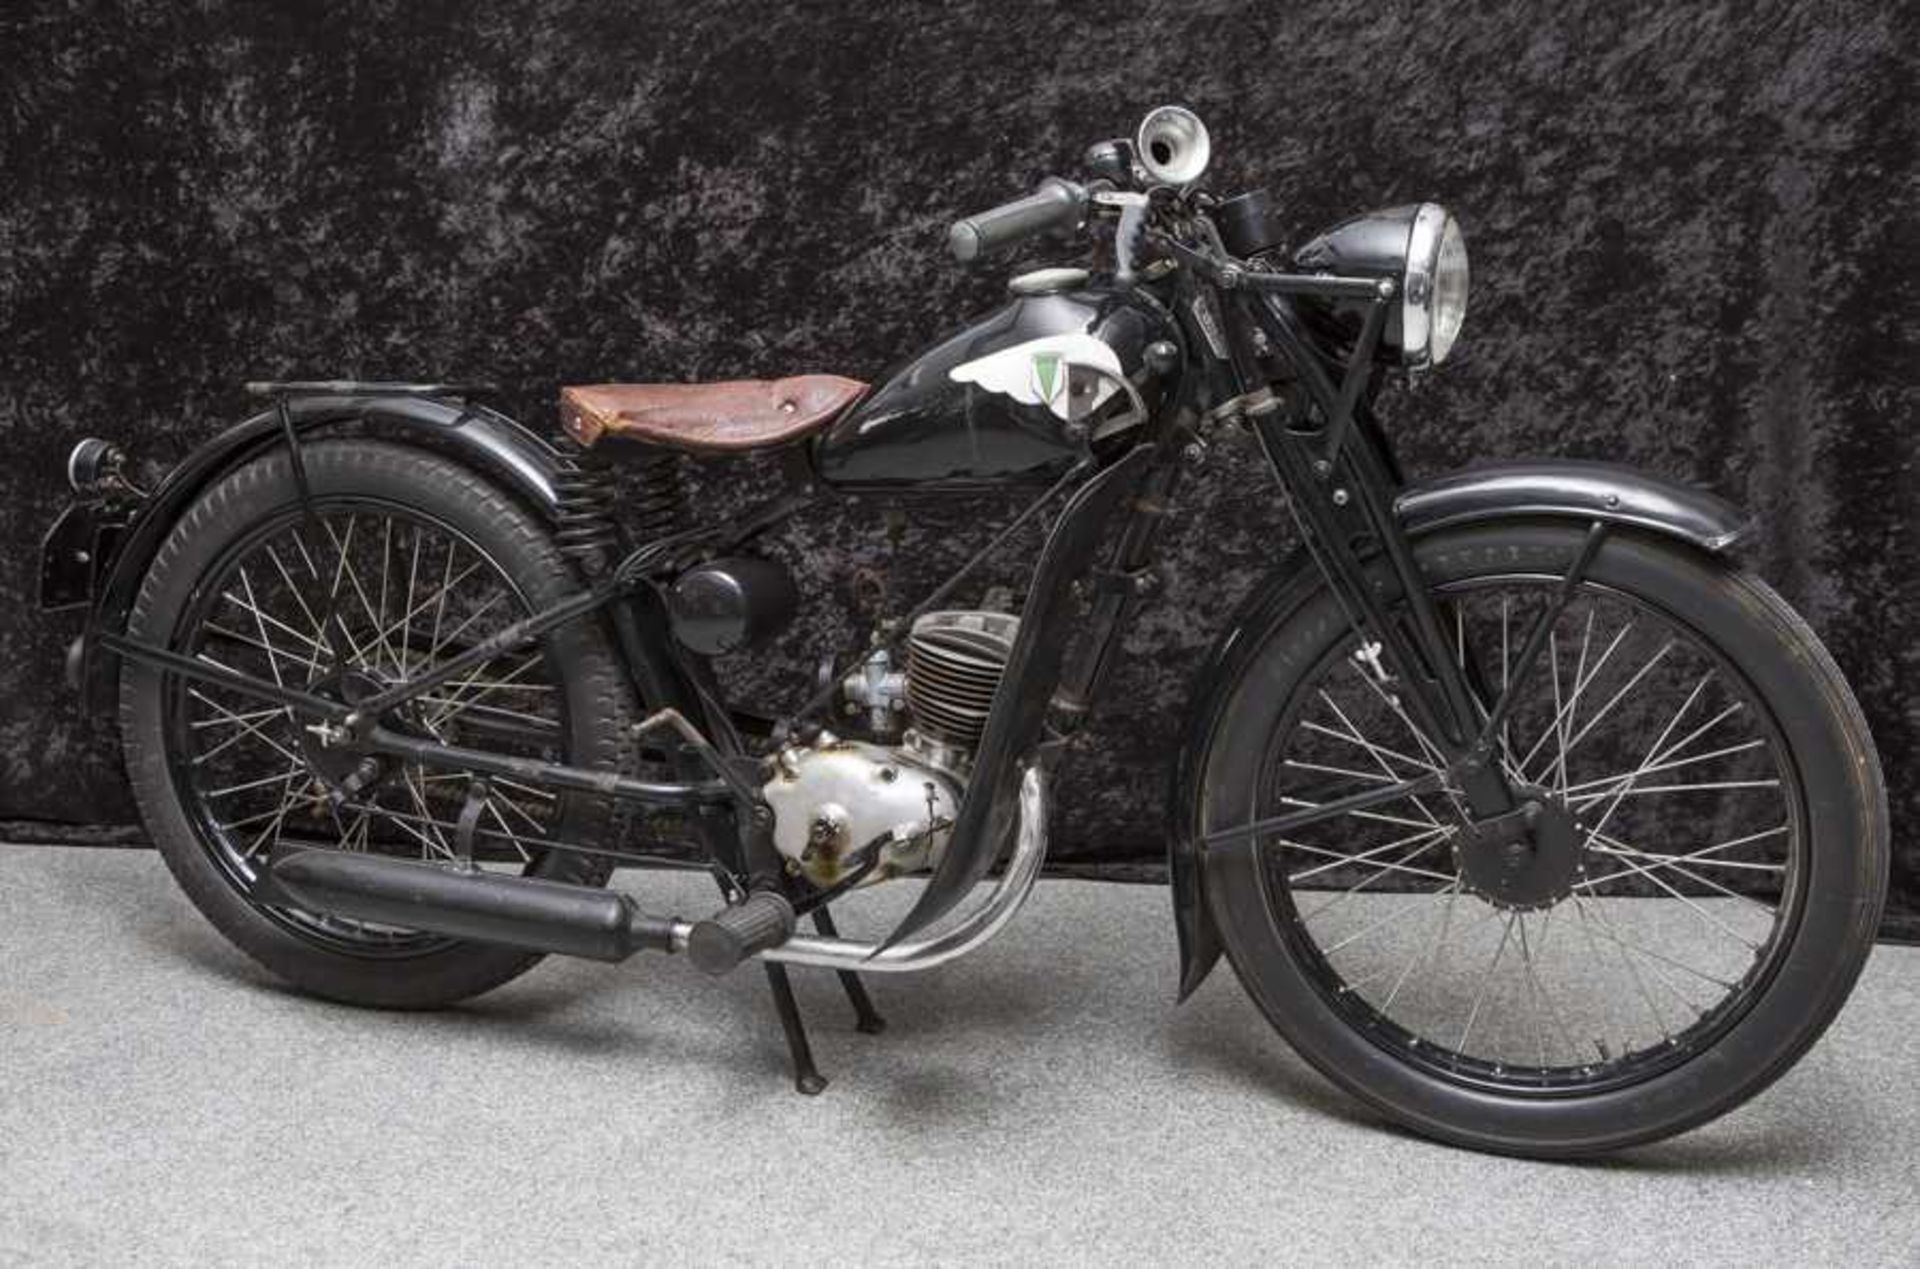 Motorrad, DKW 1936, RT, 3 PS, 98 ccm, 1 Zylinder. Guter Originalzustand. Motorcycle, DKW 1936, RT, 3